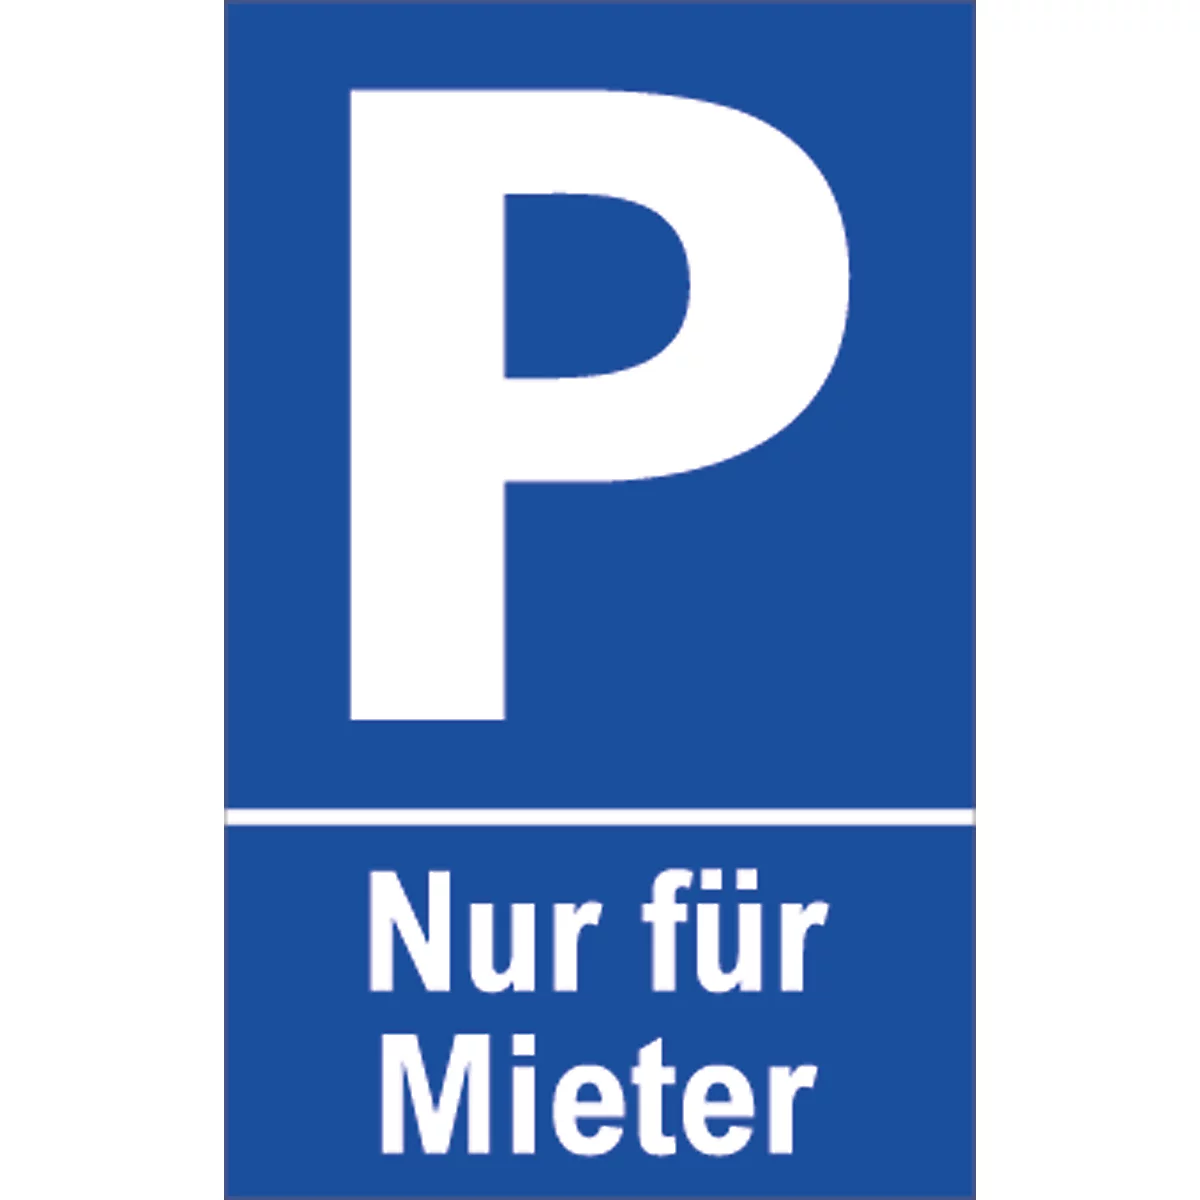 Señal de aparcamiento, 'Nur für Mieter'